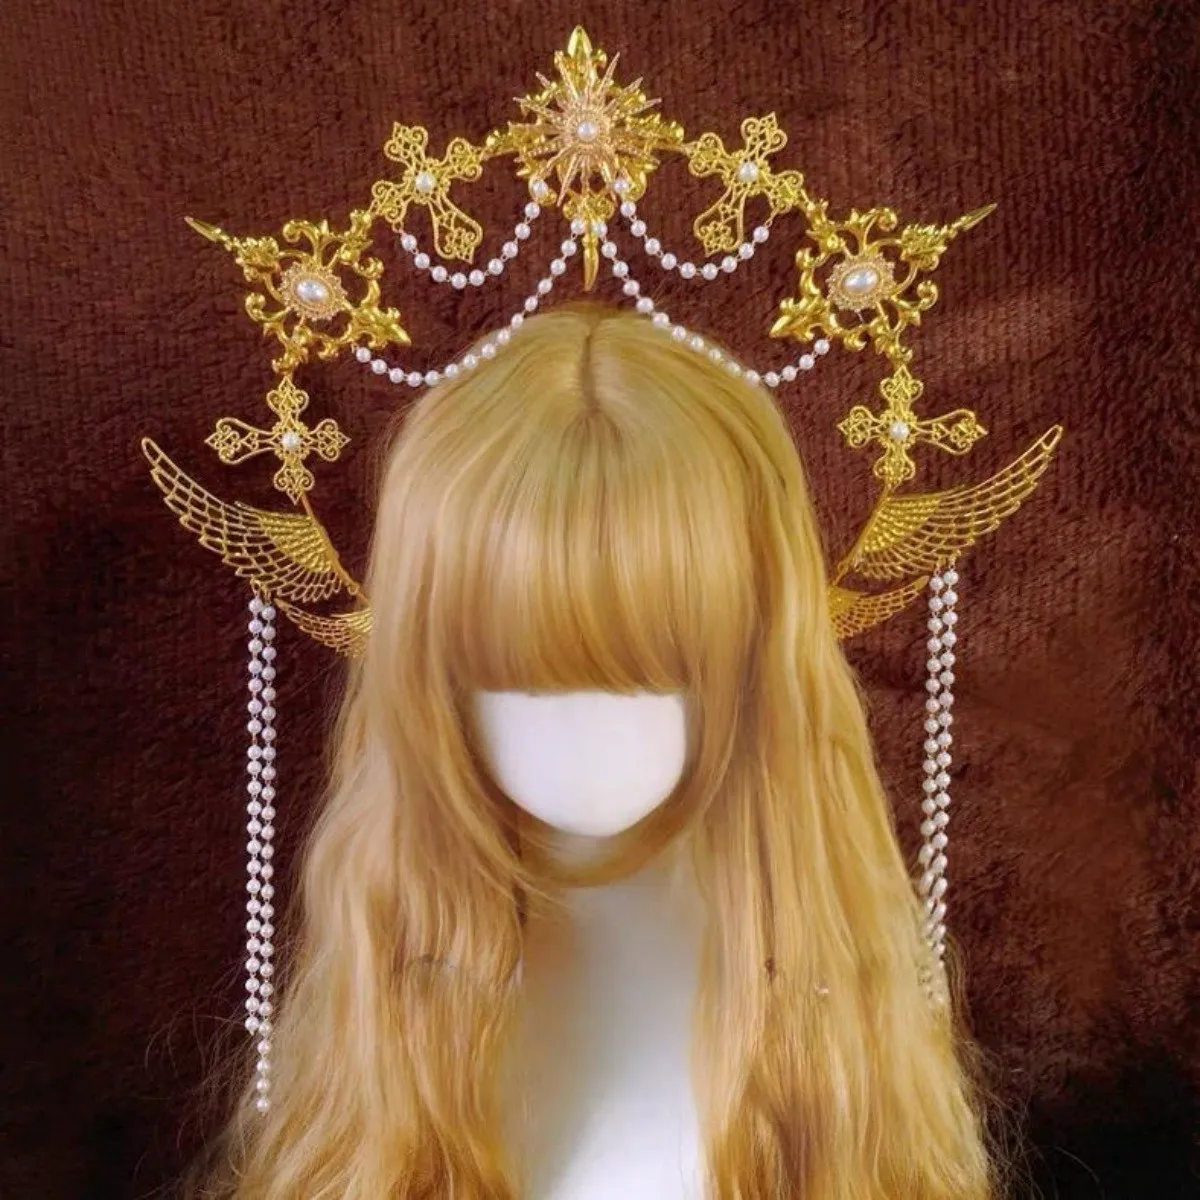 

Лолита головной убор металлический Косплей Mary Halo богиня для девочек винтажная Корона головная повязка церковный головной убор карнавальный костюм реквизит подарки люкс